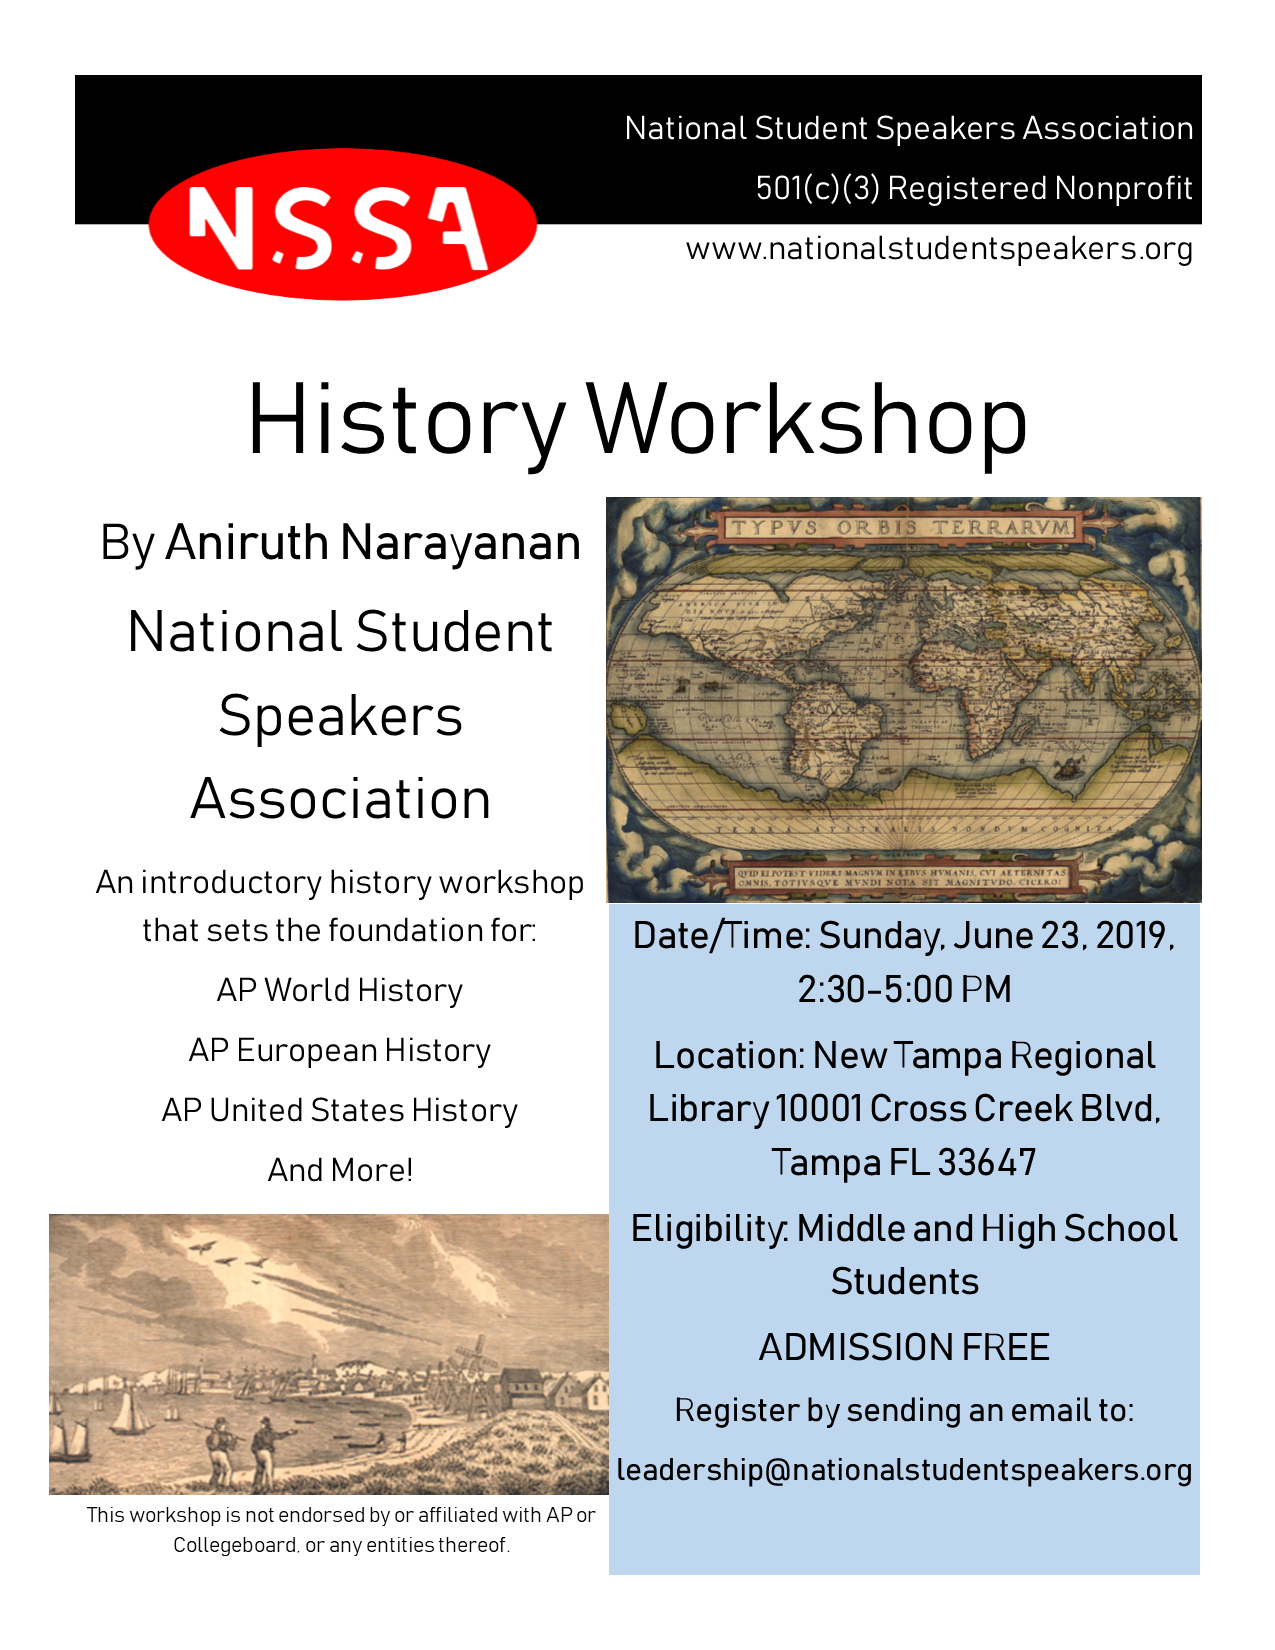 History Workshop Flyer